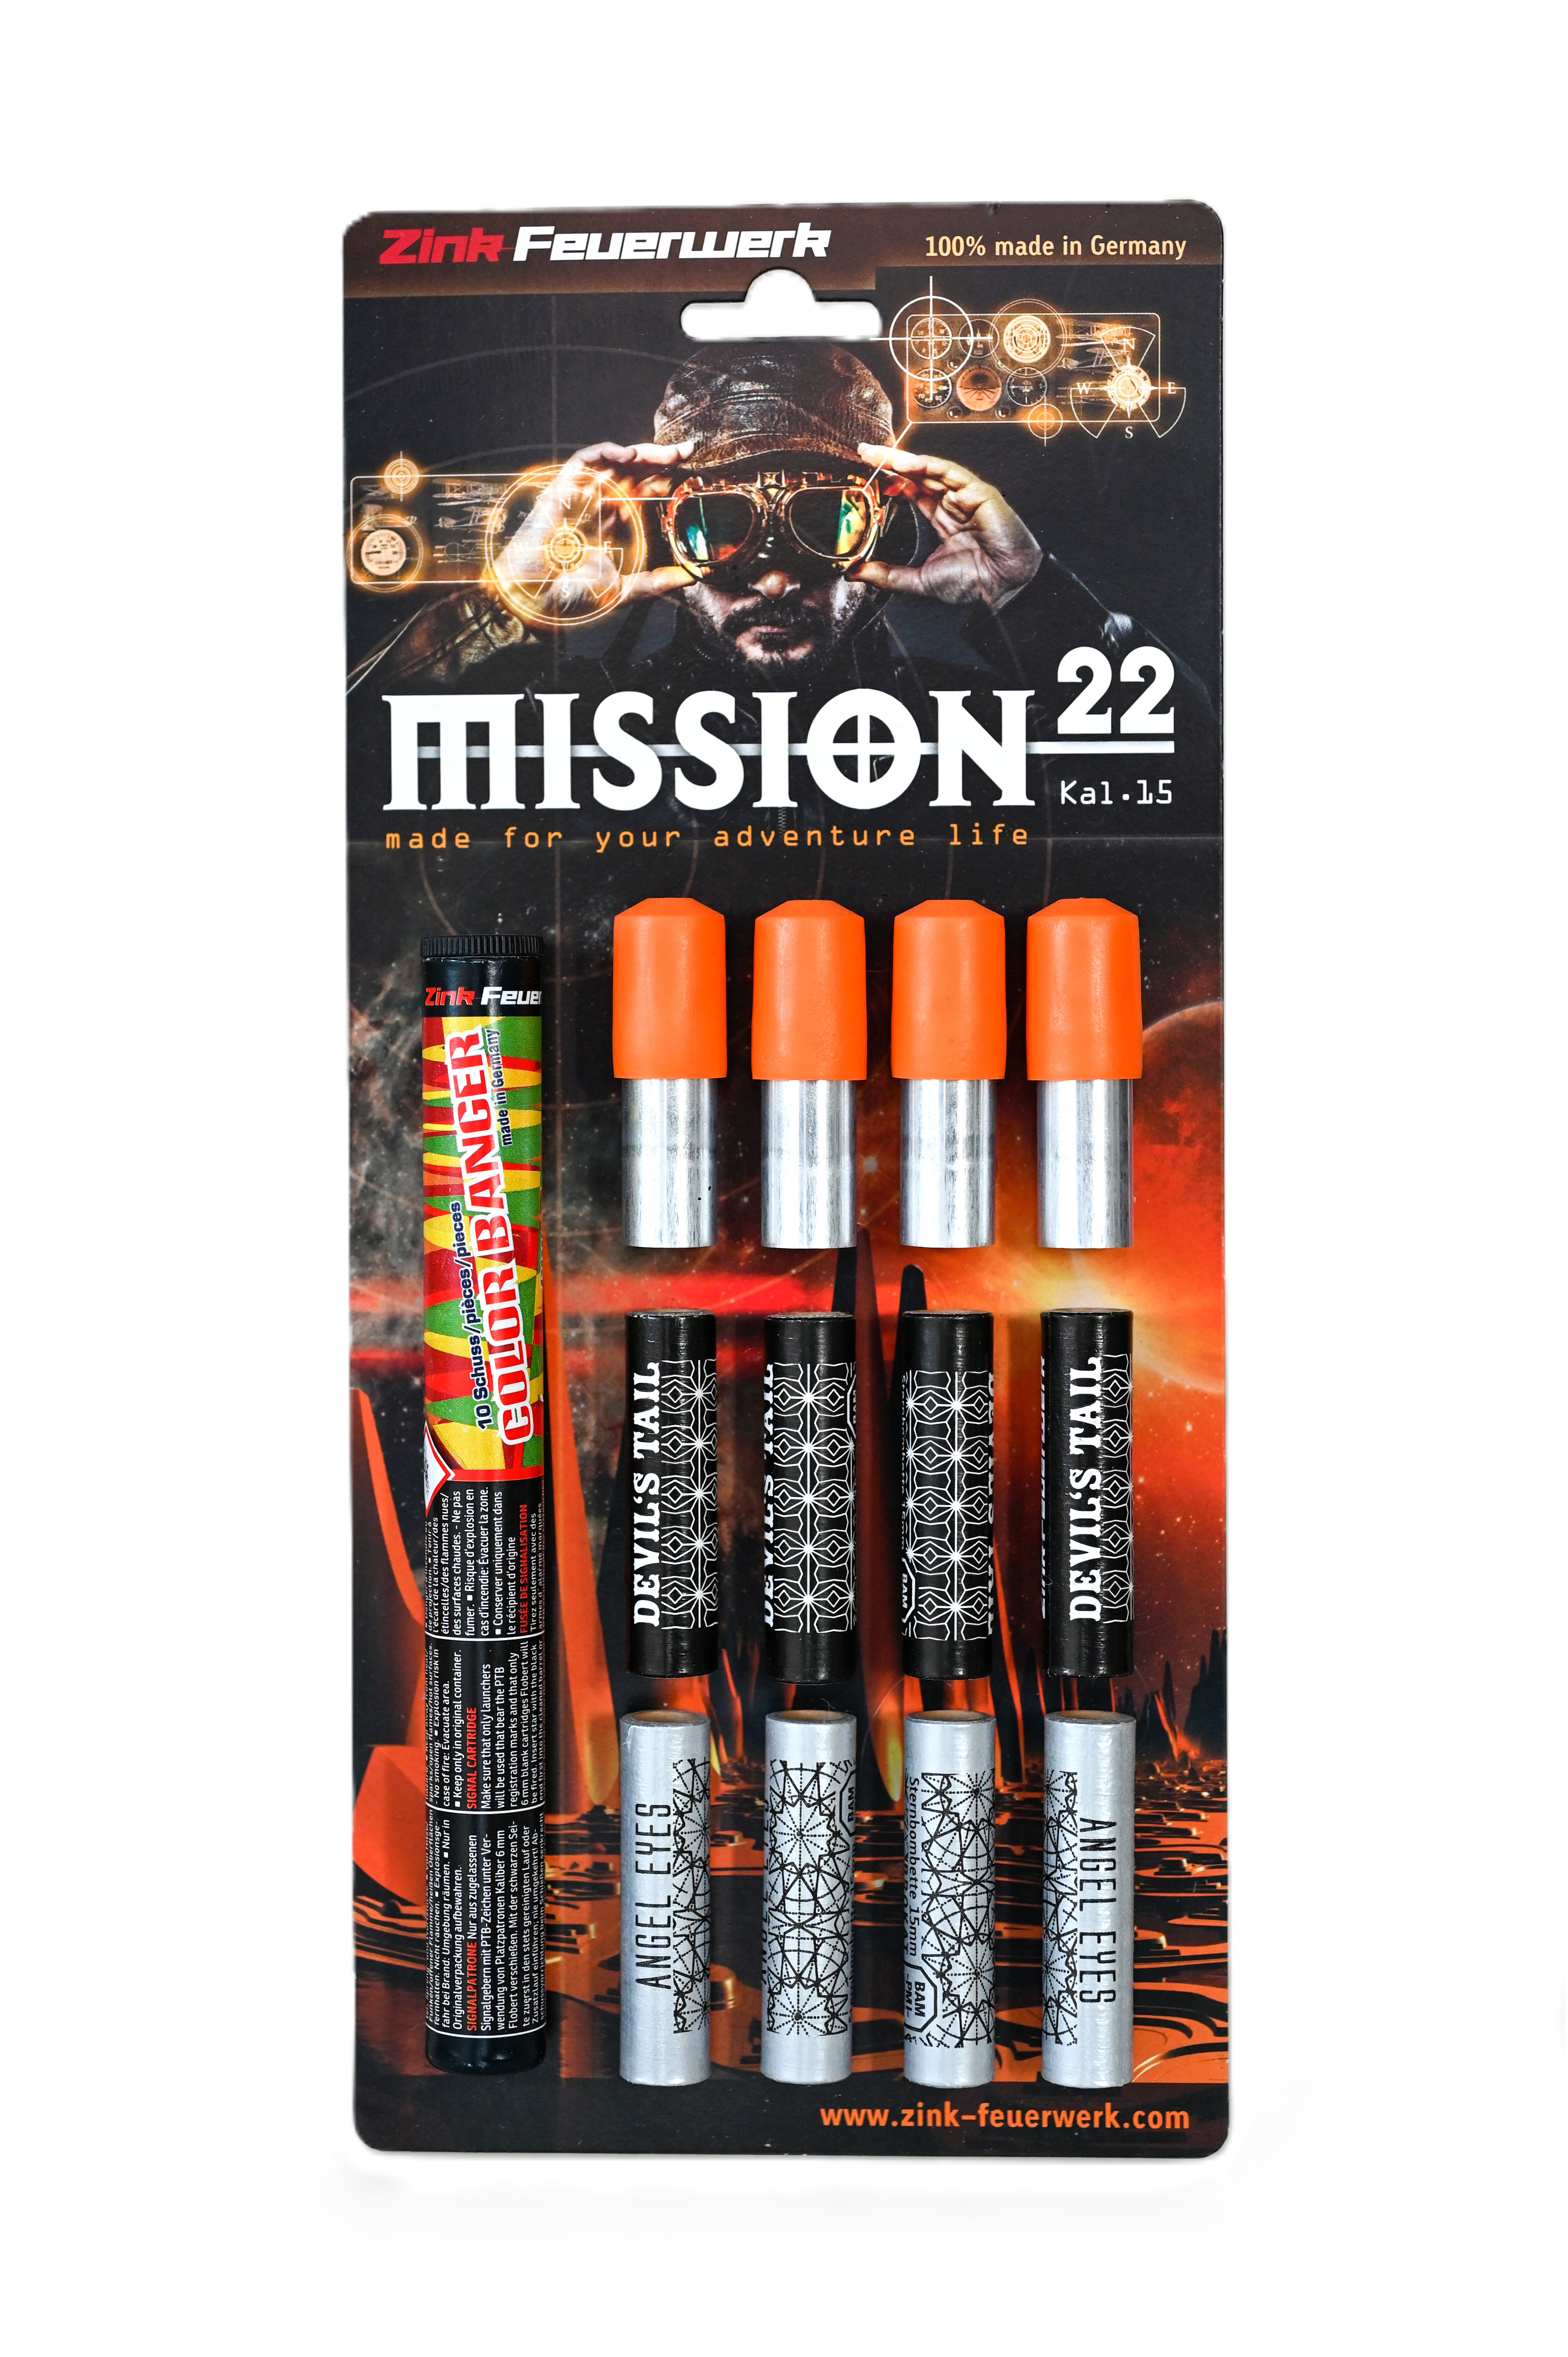 "Zink Feuerwerk 'Mission22', eine dynamische Zusammenstellung von Feuerwerkskörpern, die einen intensiven und vielfältigen Effektreichtum am Himmel erzeugen, perfekt für große Feierlichkeiten